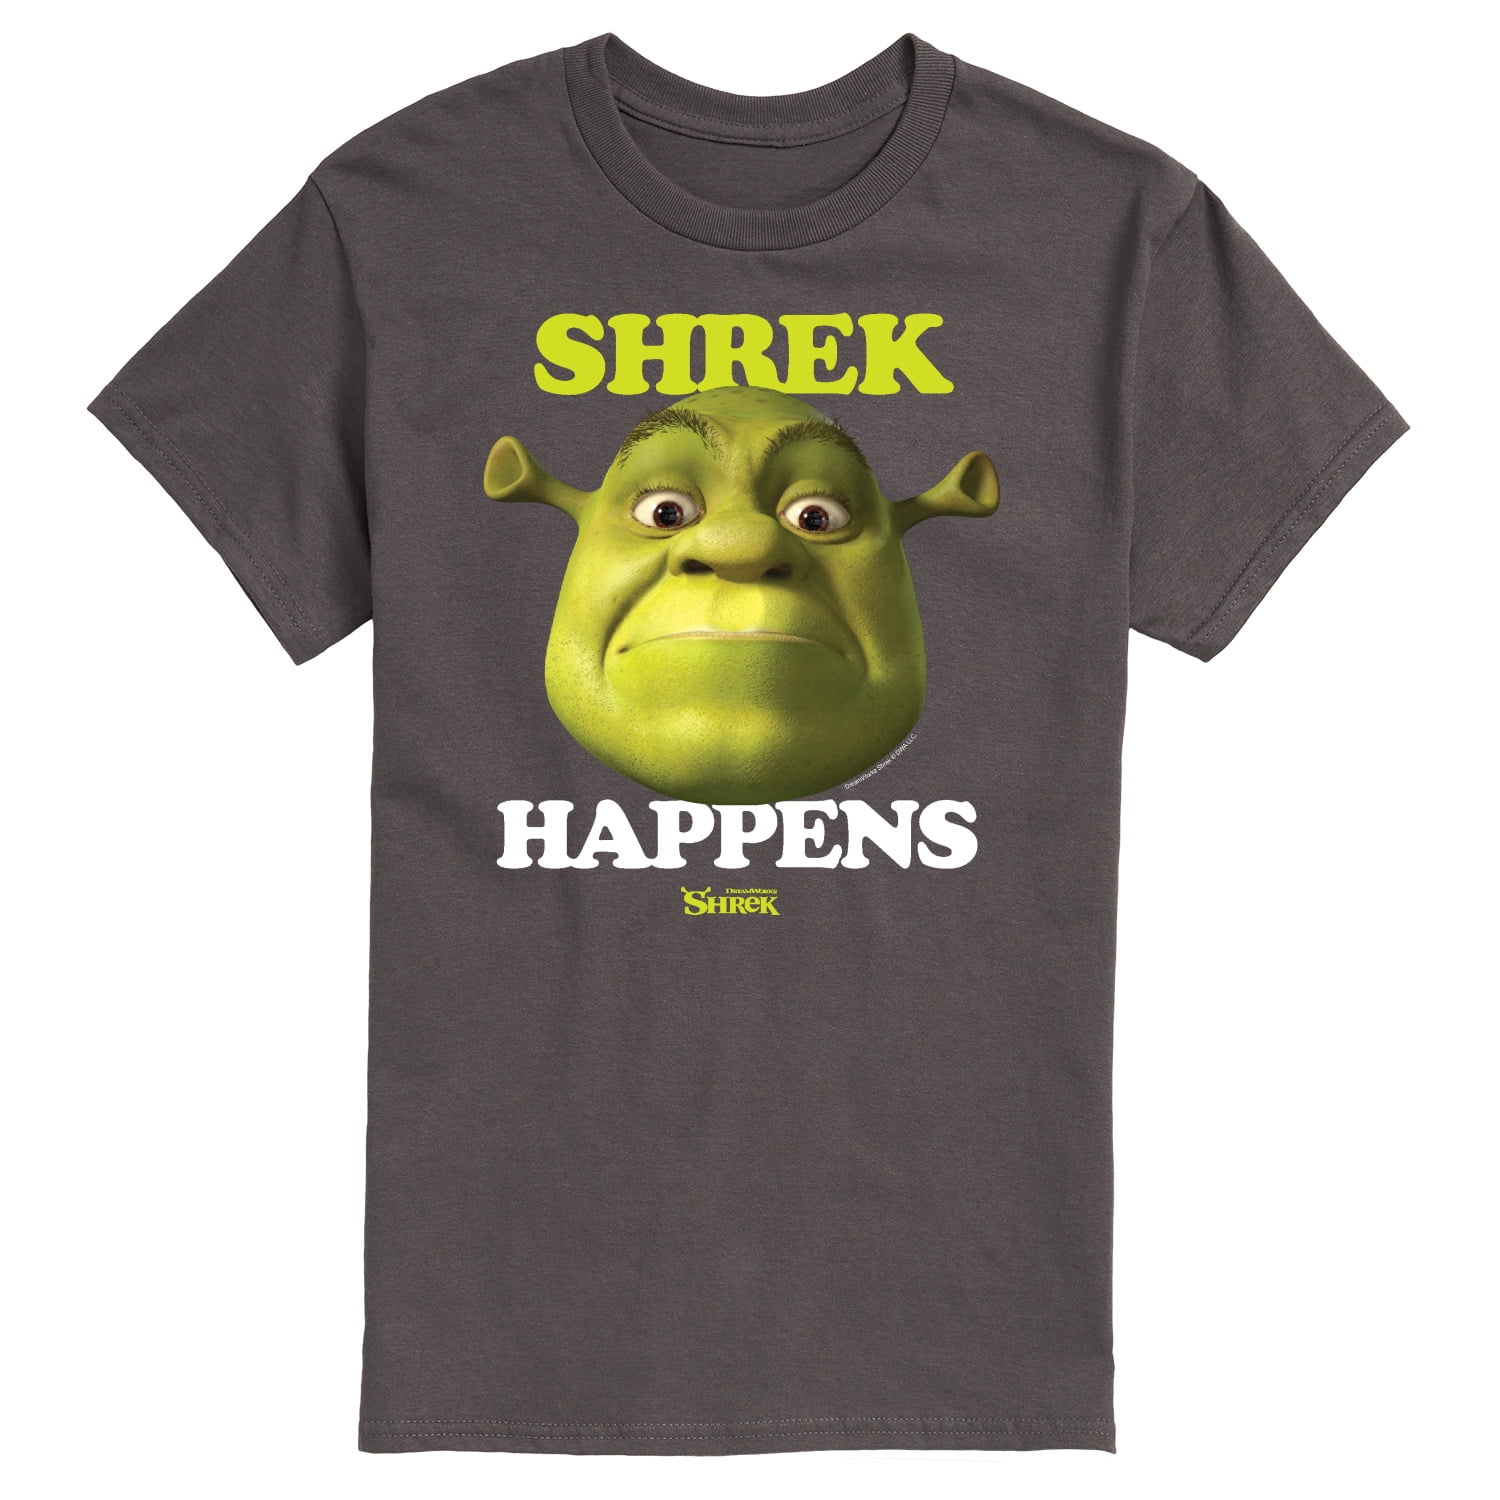 Shrek - Shrek Happens Meme - Men's Short Sleeve Graphic T-Shirt ...